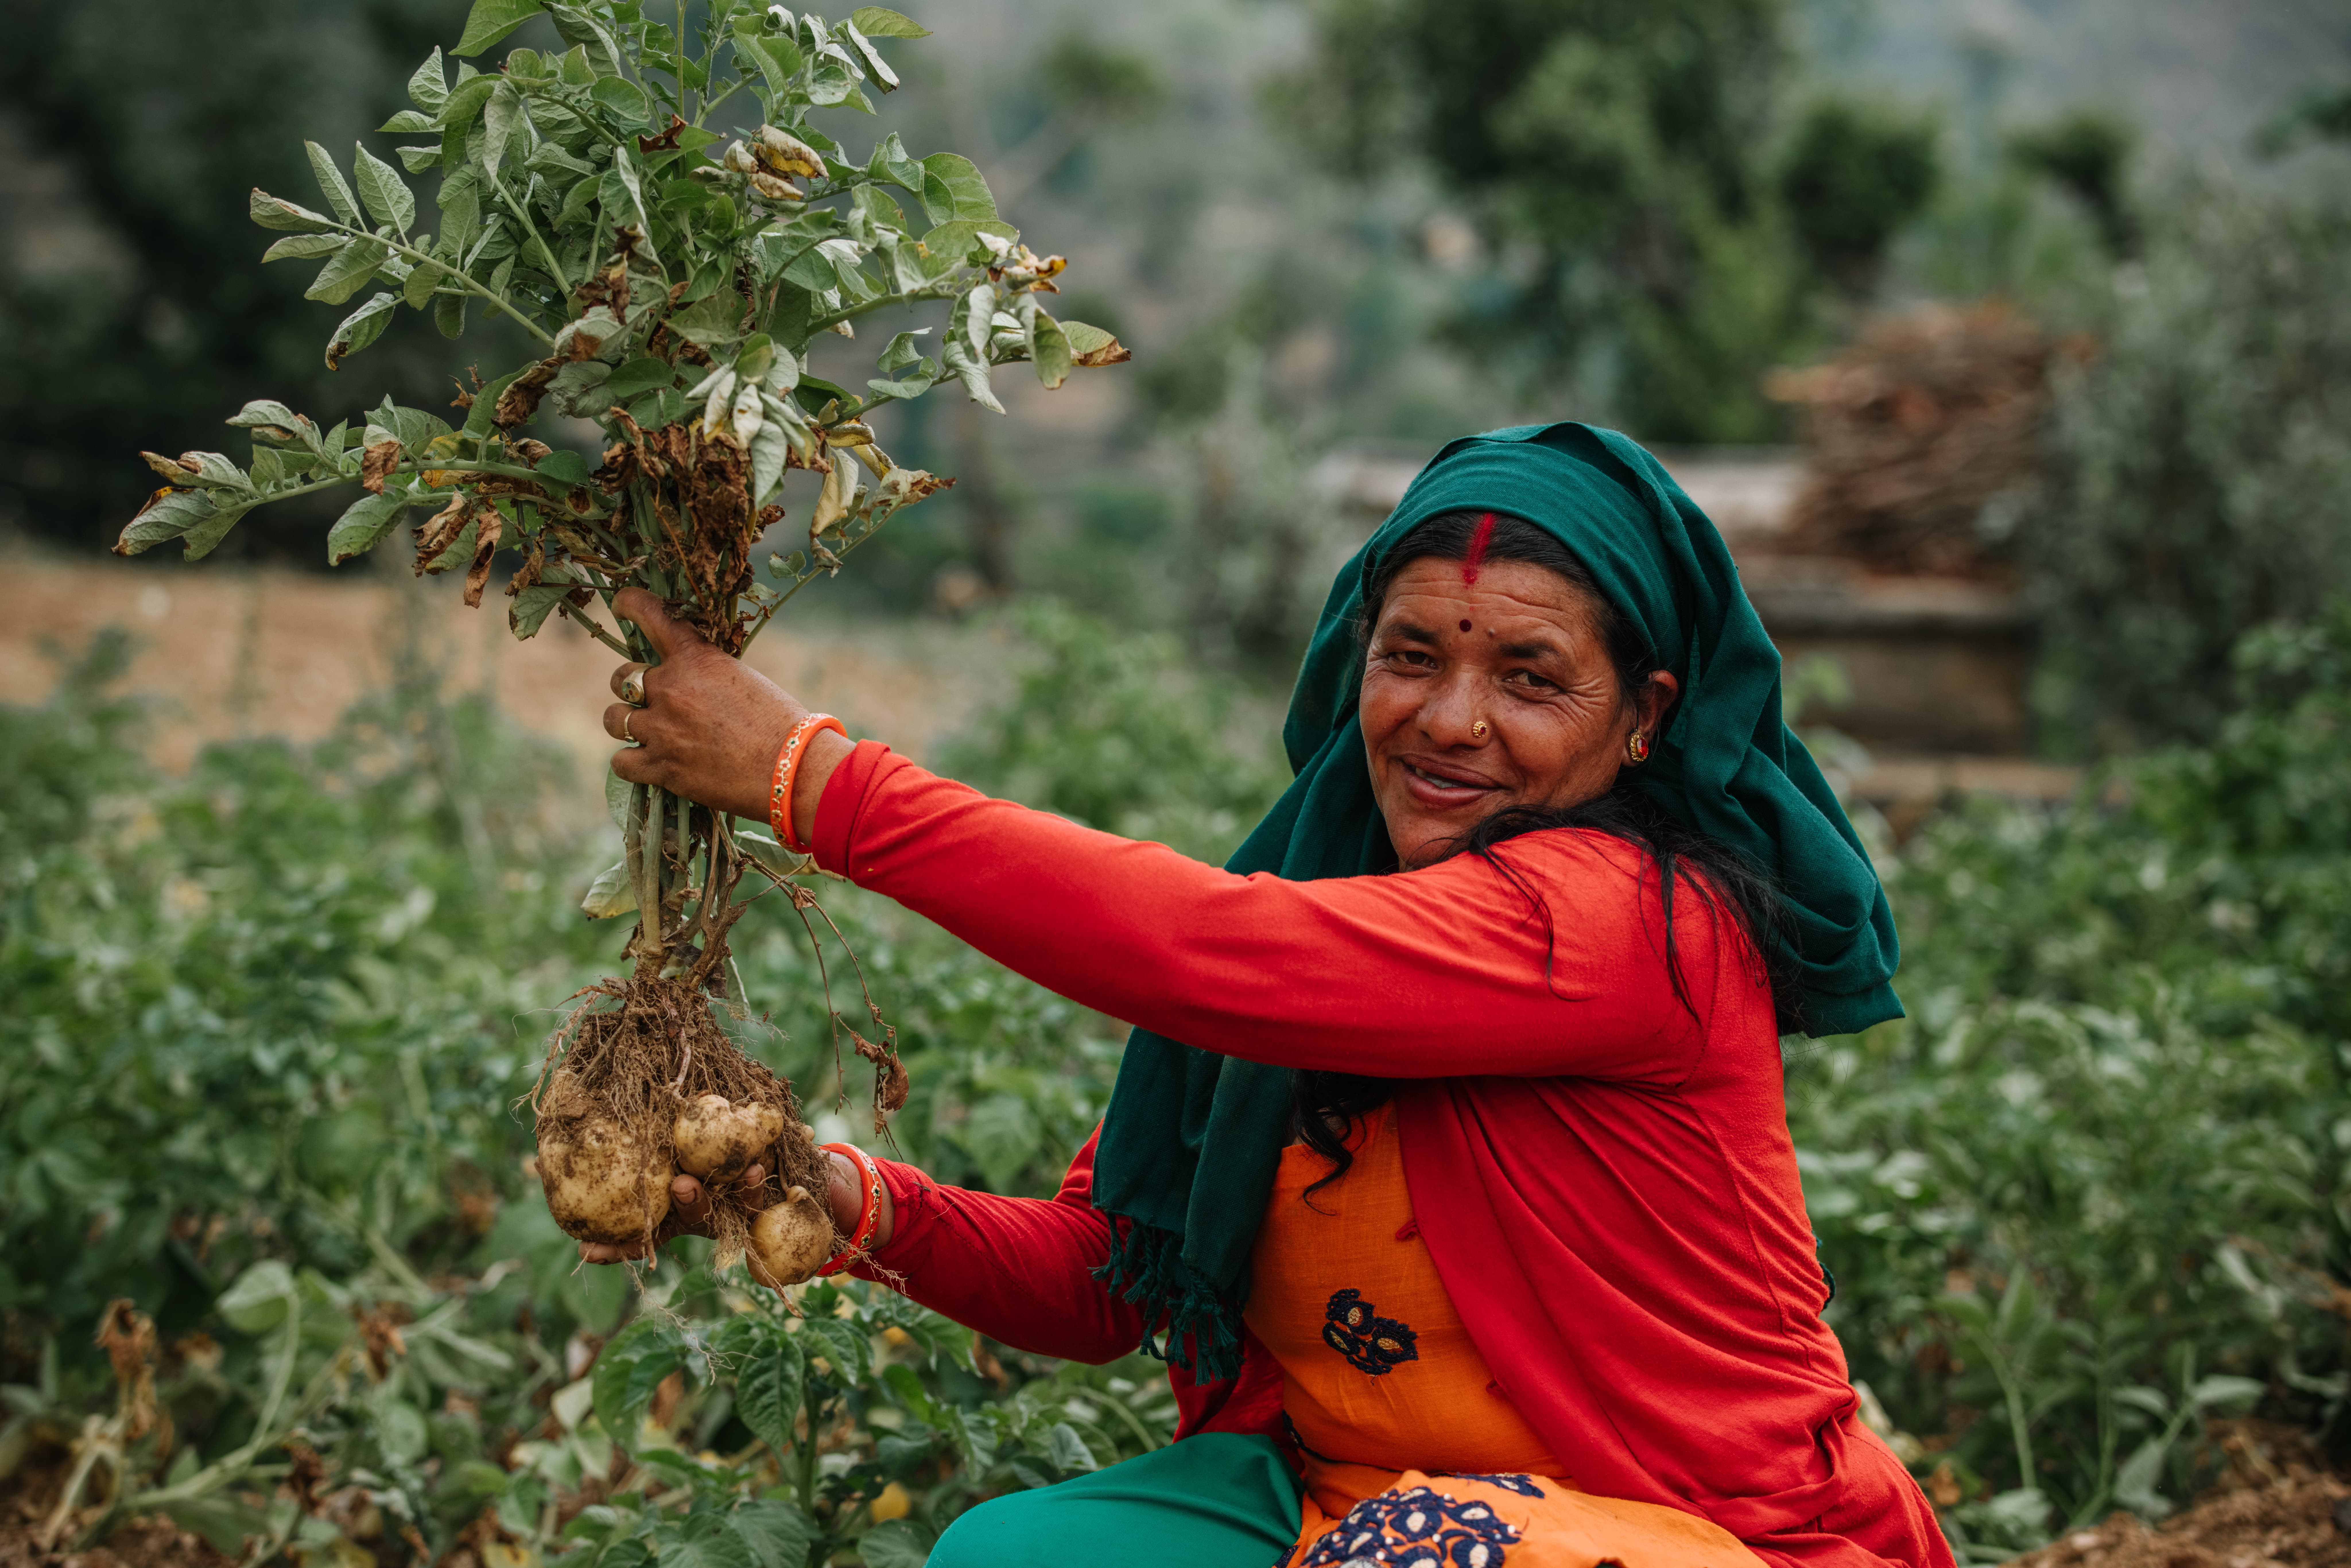 氣候變化影響尼泊爾山區小農的生計，樂施會建議當地村民改種一些用水較少及易於儲存的農作物。圖片中的Haru改種了本地品種的馬鈴薯，並改良了種植方法，隨後的產量有所增加。